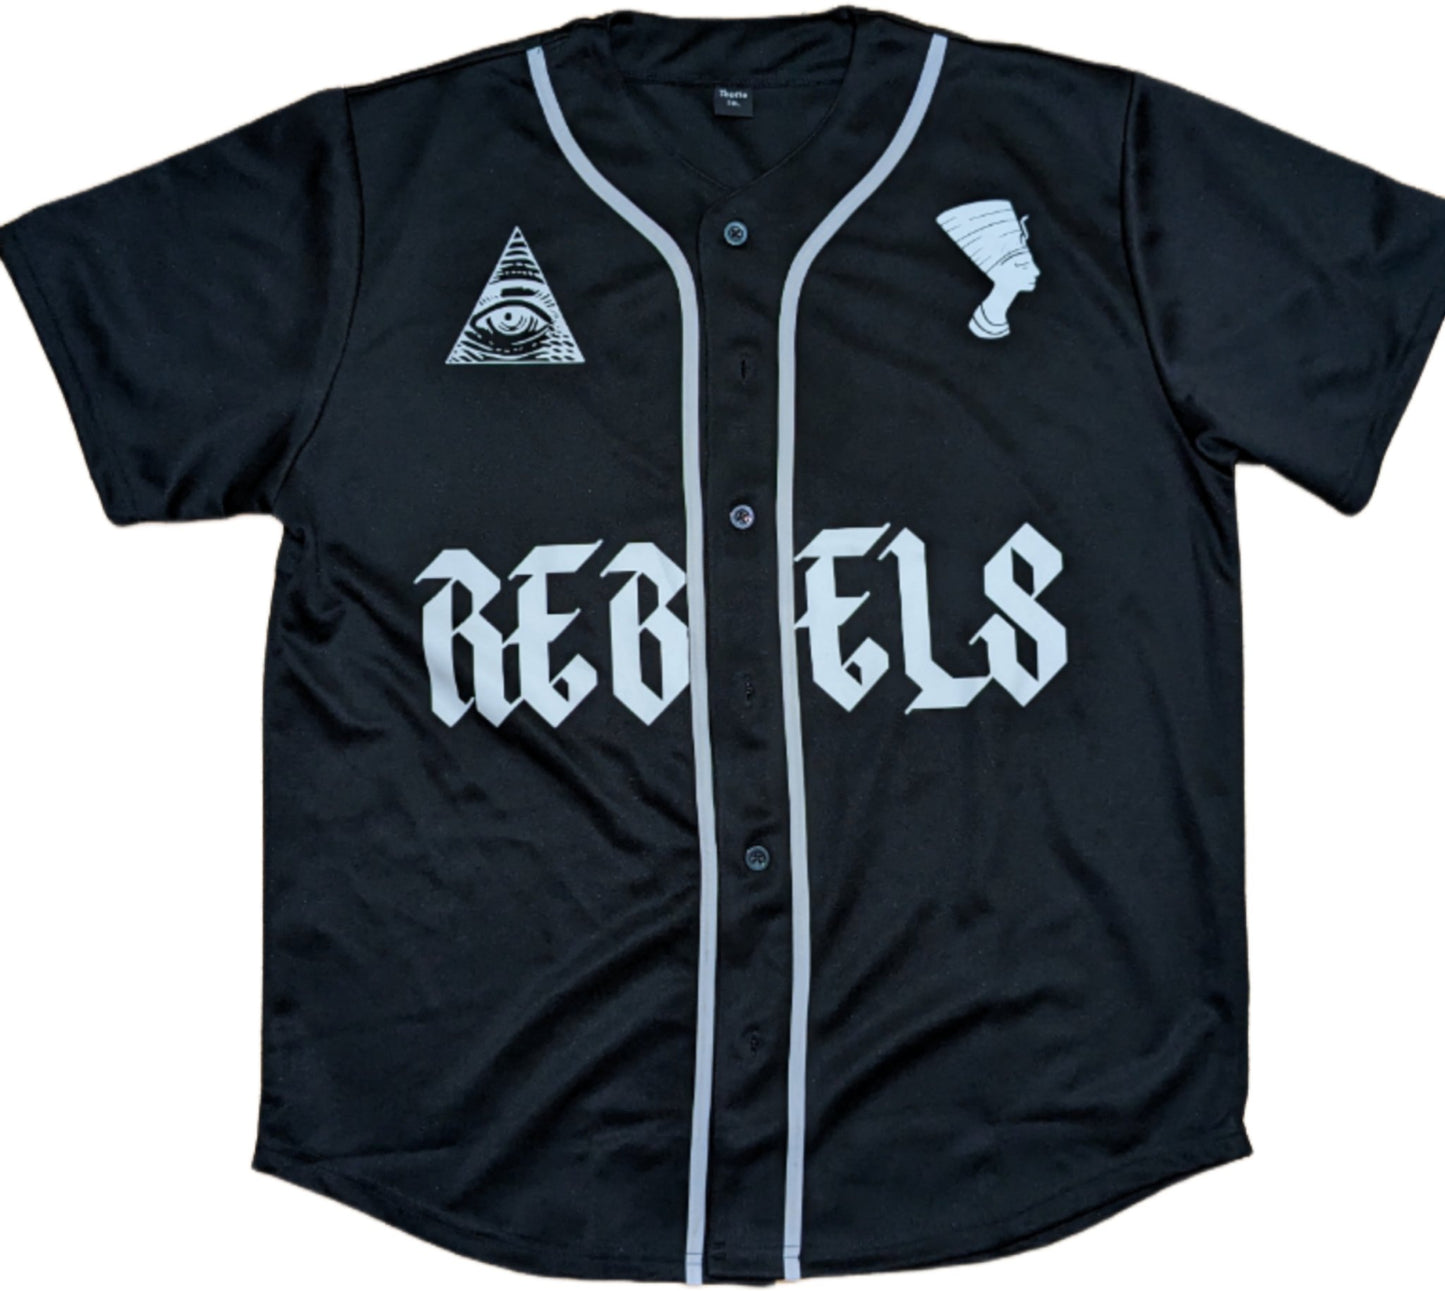 *PRE - ORDER* REBELS Short Sleeve Baseball Jersey - REBELLIOUS1S